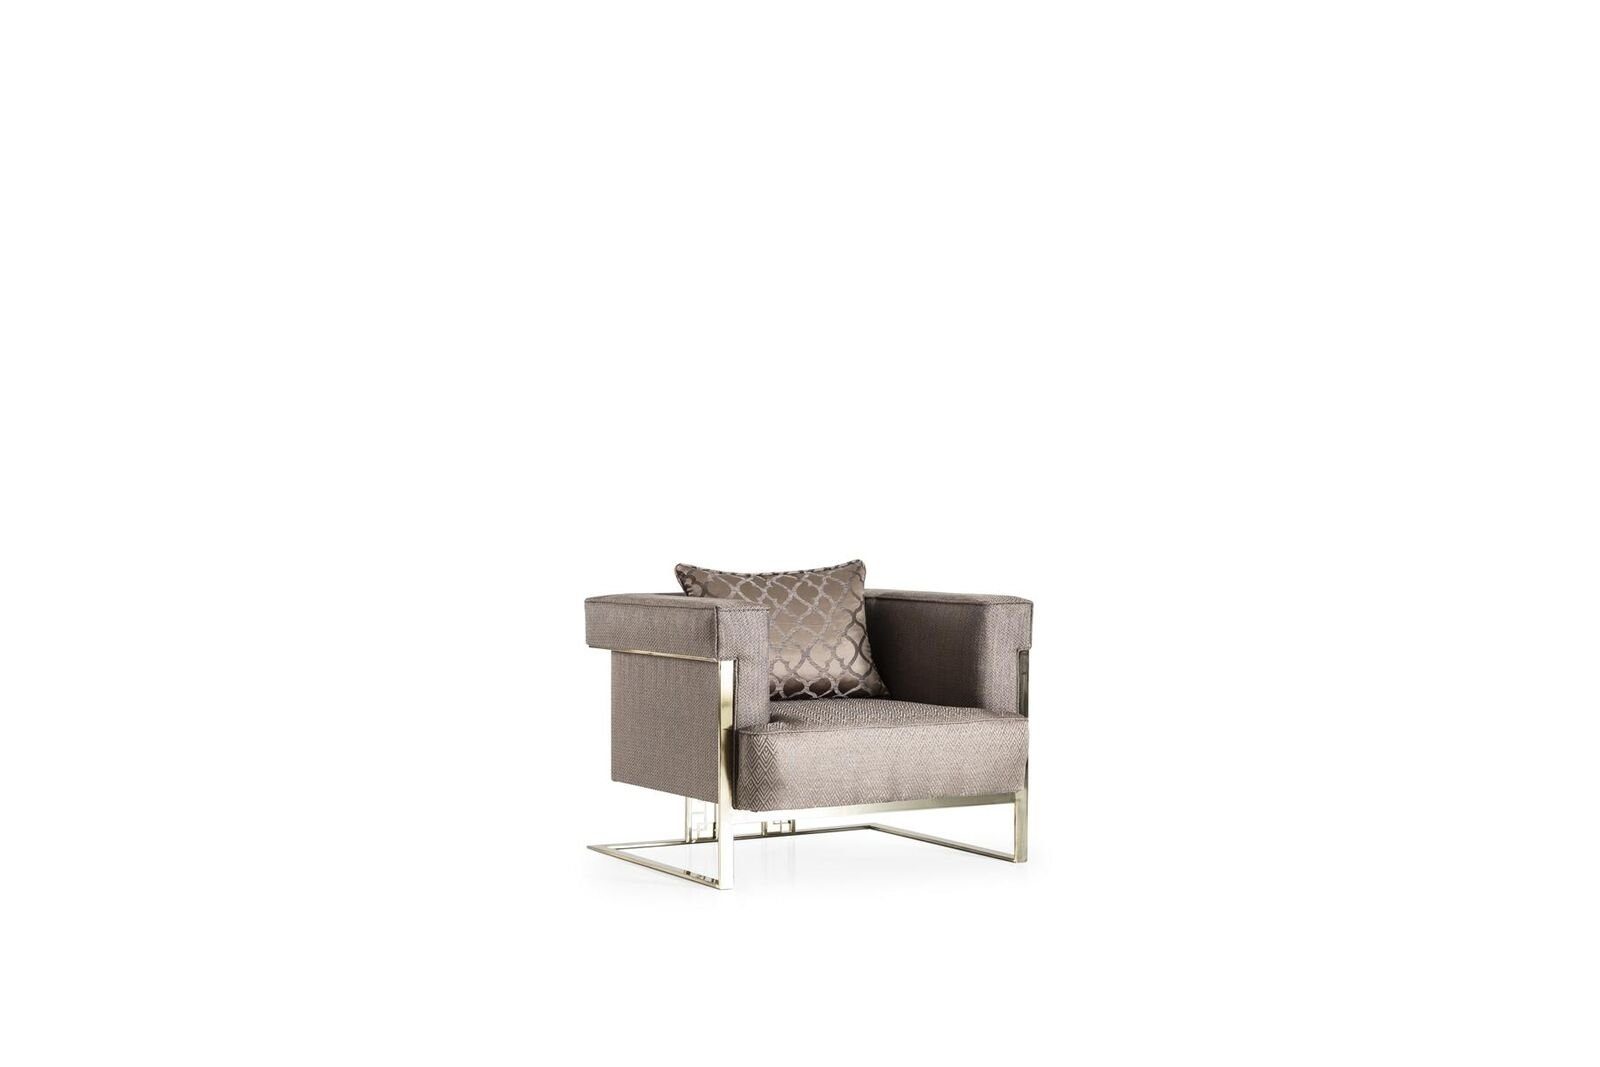 JVmoebel Sessel Sessel Beige Wohnzimmer Sitzer 1 Design Elegantes Möbel Modern Schön